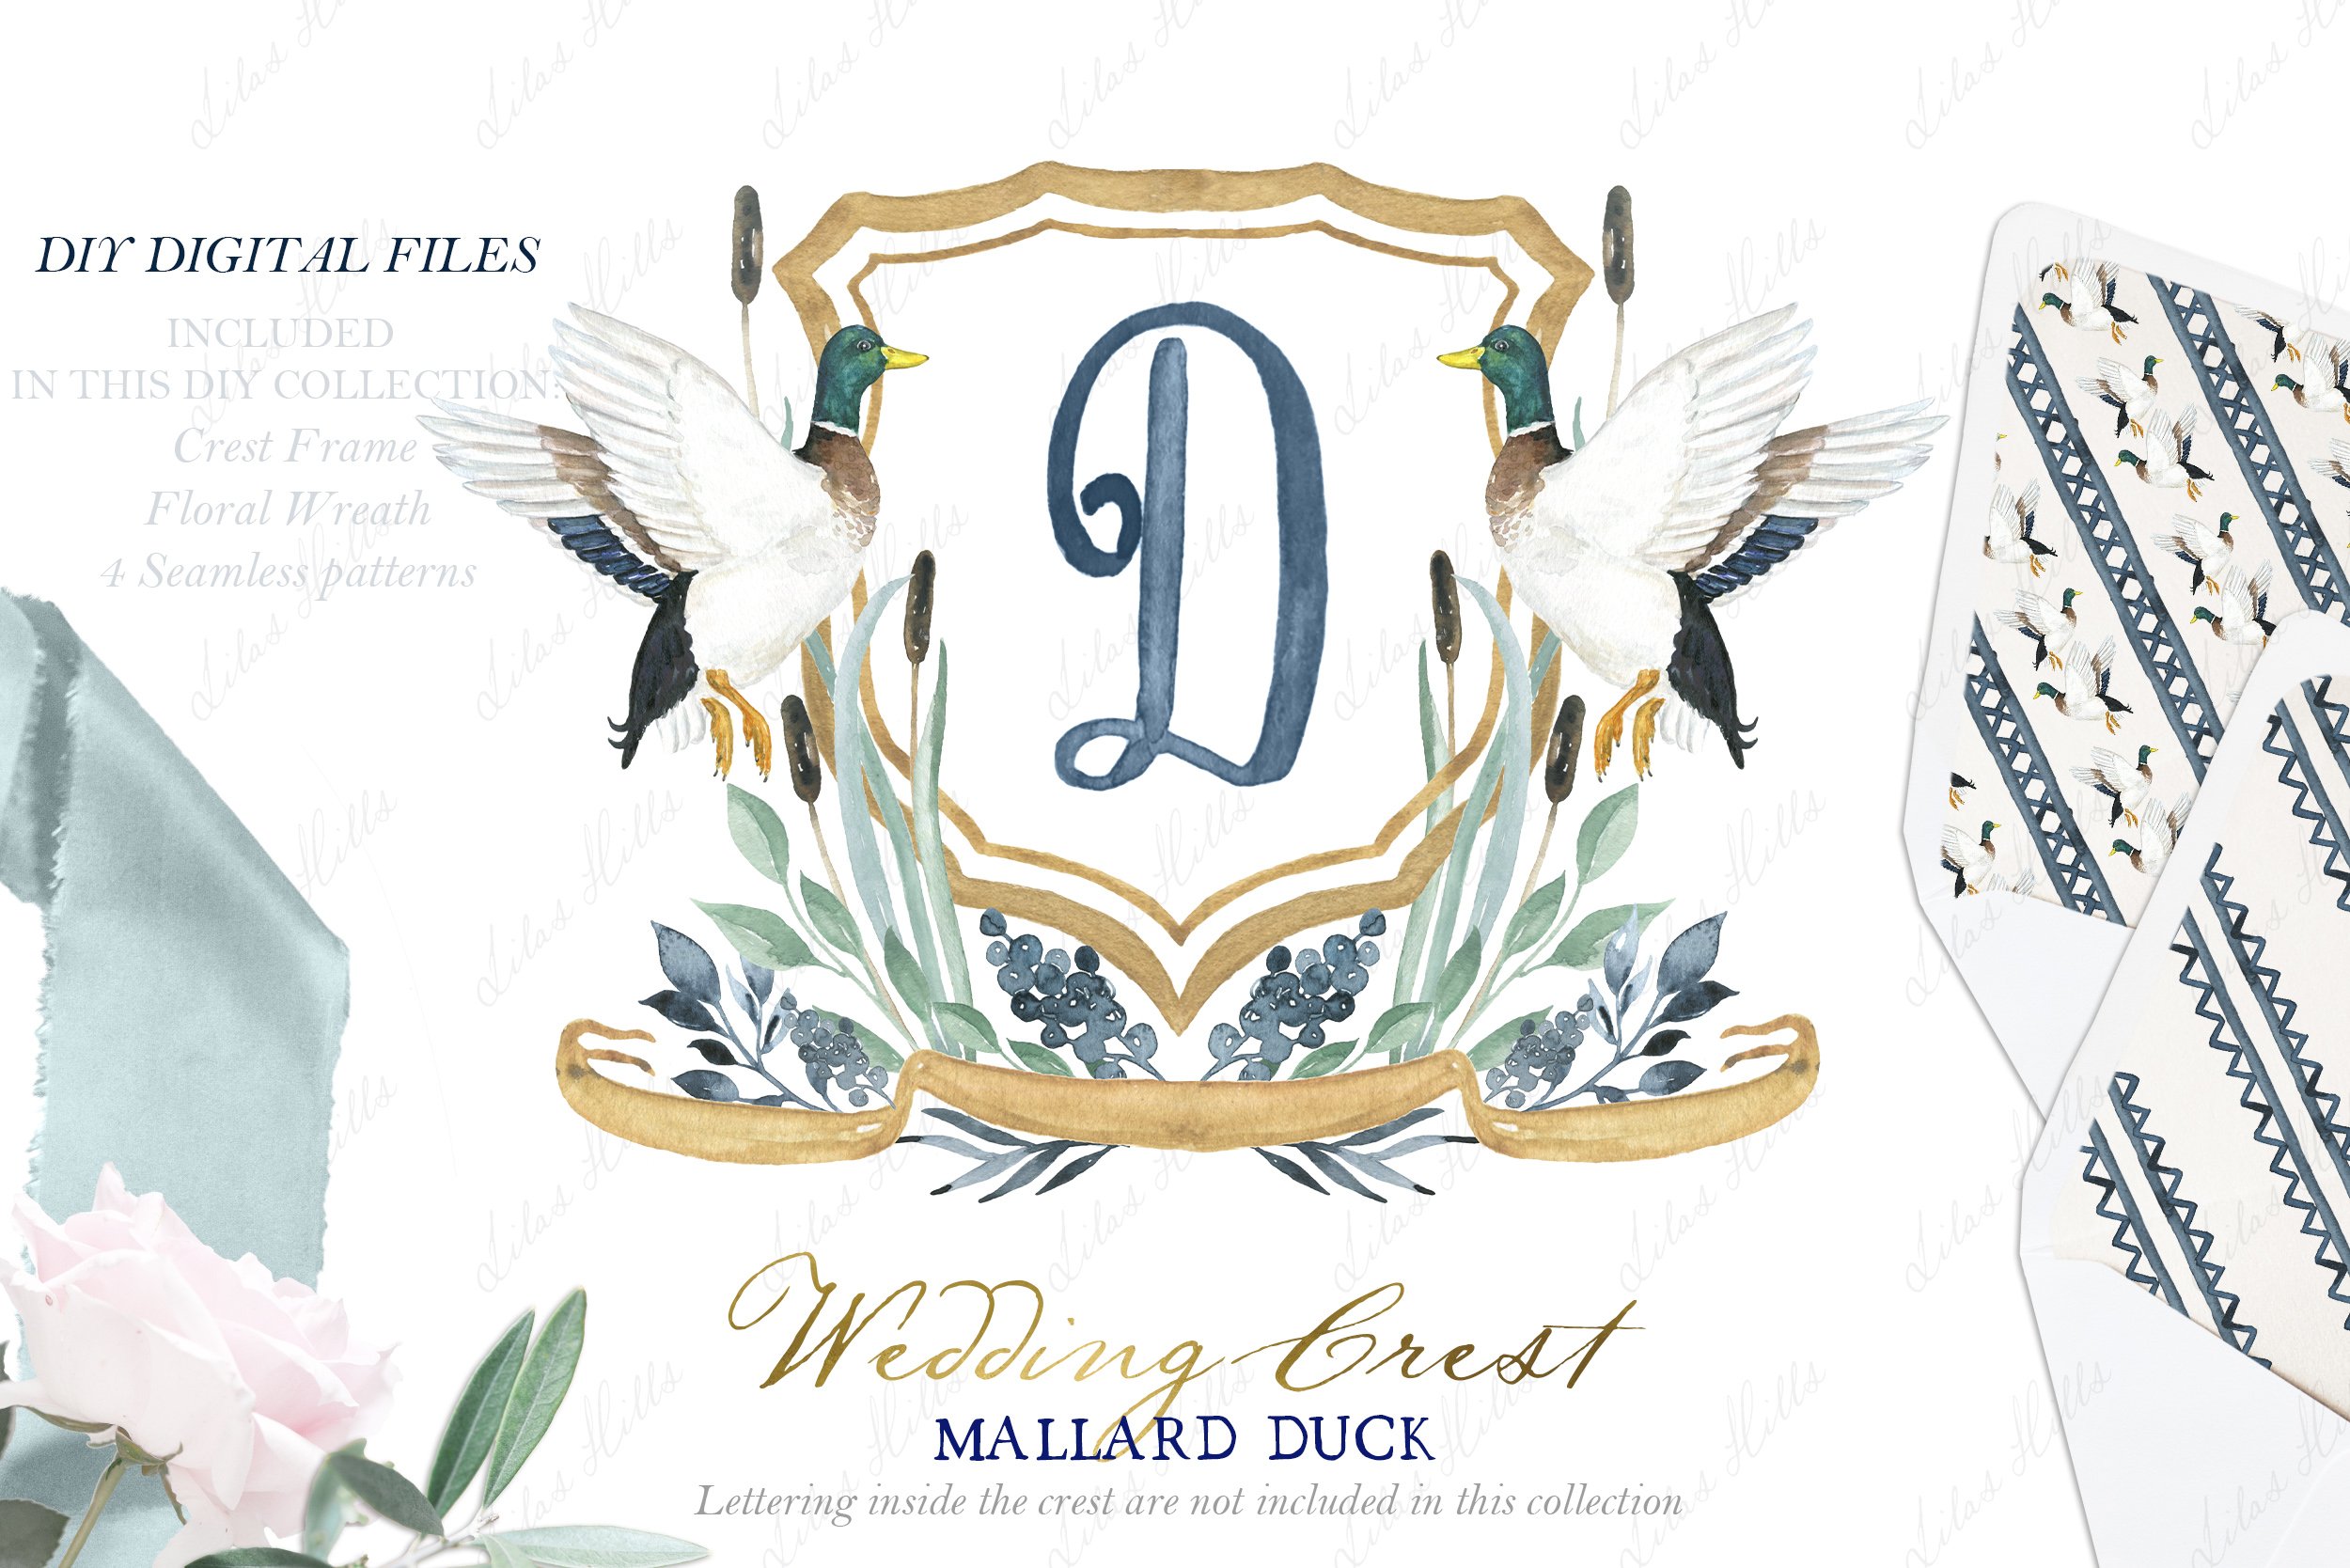 Watercolor Crest Mallard Duck cover image.